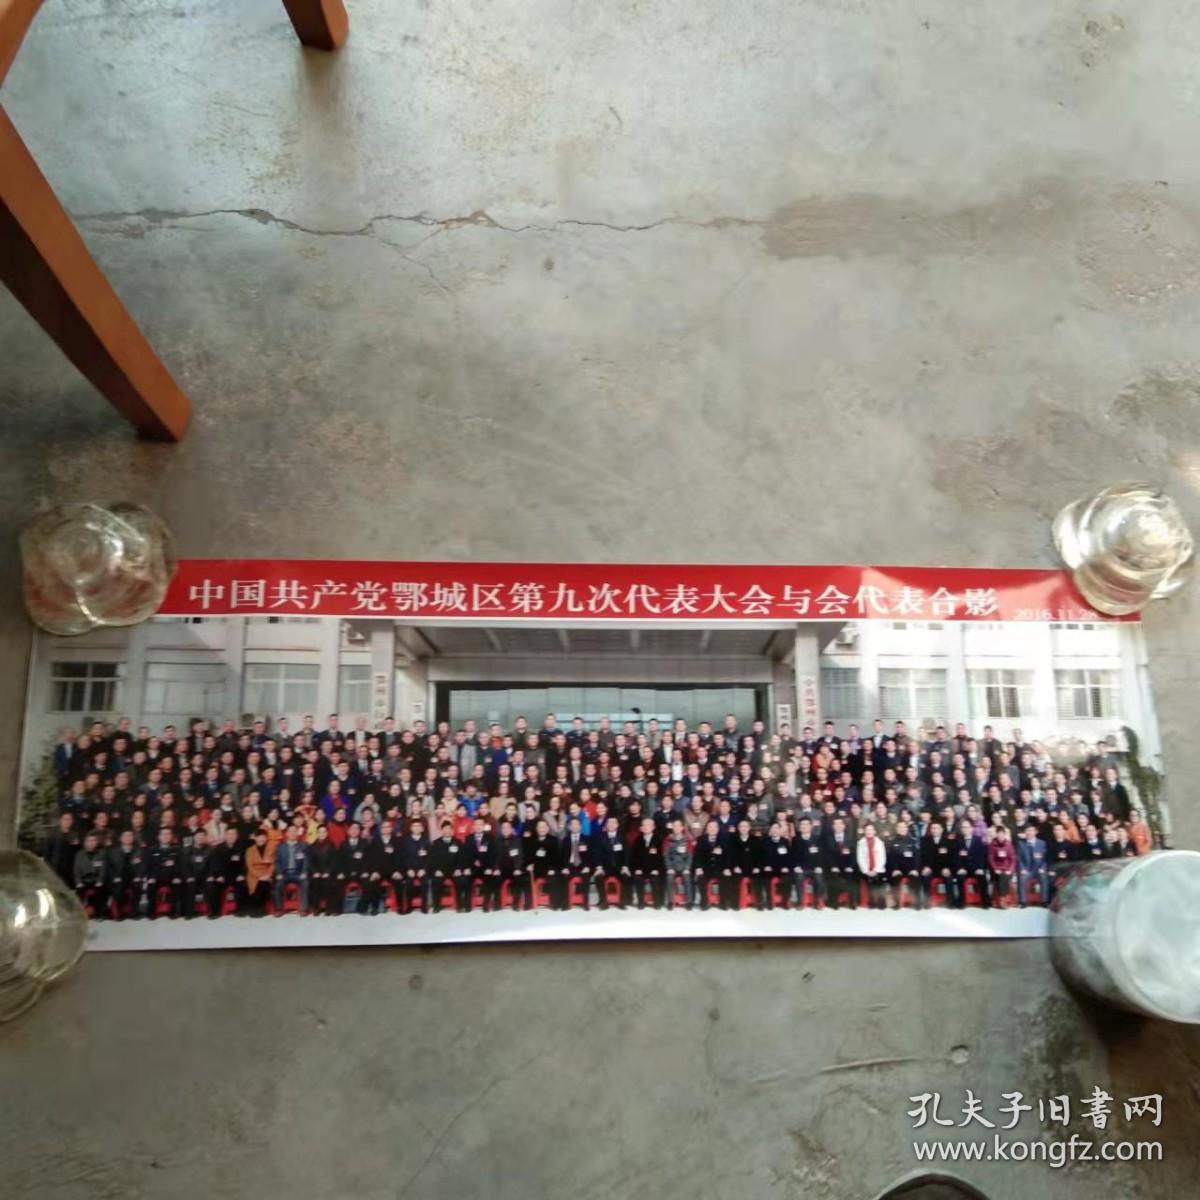 老照片 中国共产党鄂城区第九次代表大会与会代表合影2016.11.28.